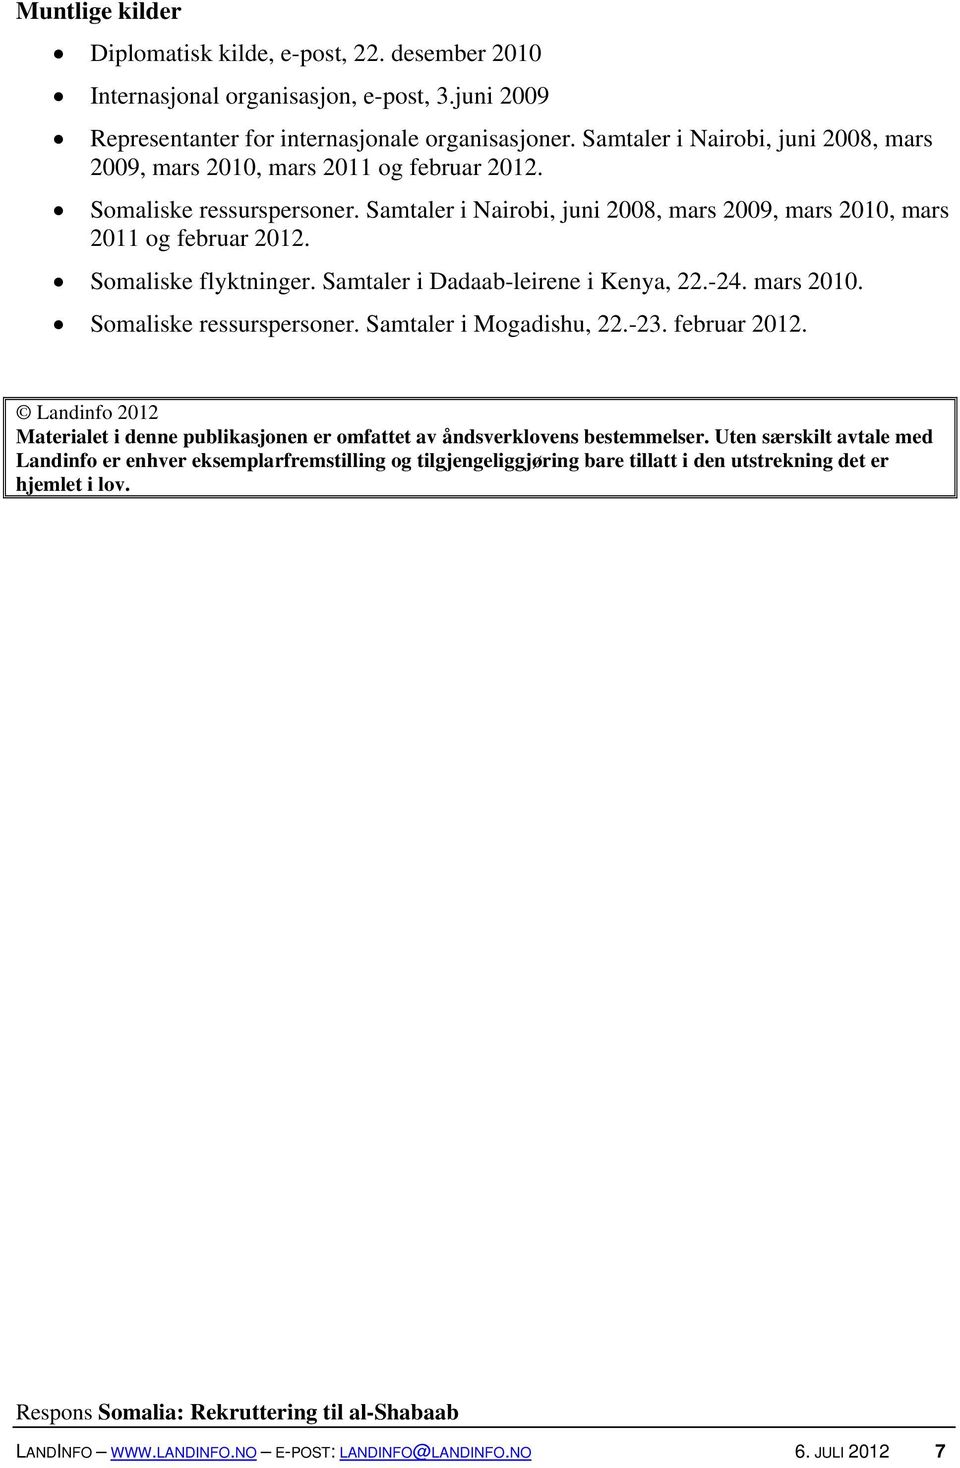 Somaliske flyktninger. Samtaler i Dadaab-leirene i Kenya, 22.-24. mars 2010. Somaliske ressurspersoner. Samtaler i Mogadishu, 22.-23. februar 2012.